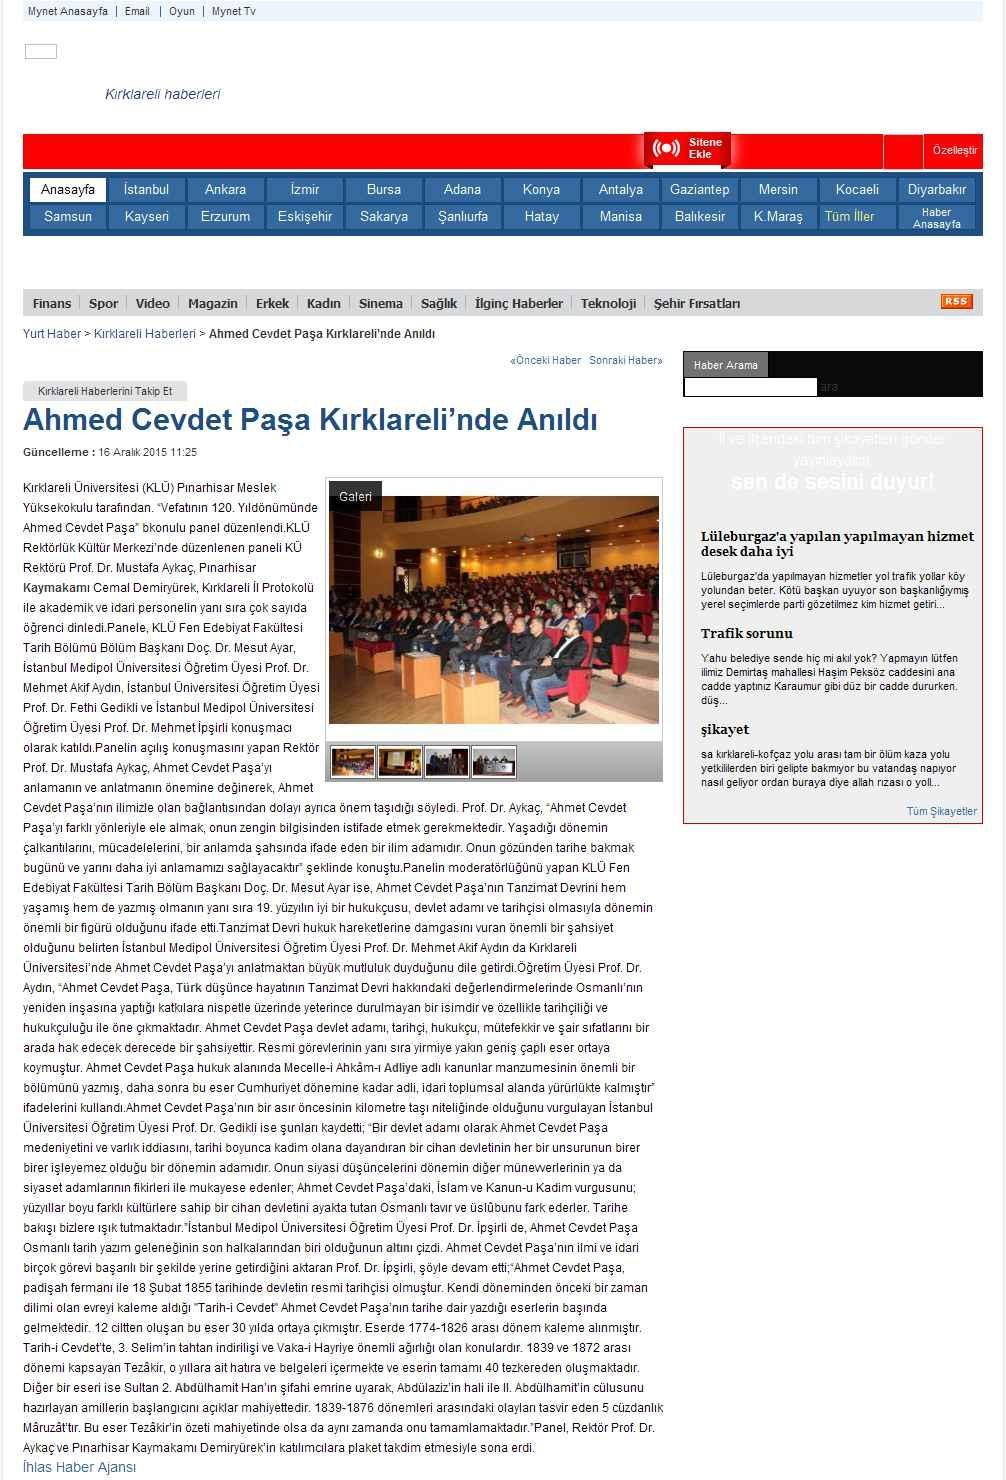 Portal Adres AHMED CEVDET PASA KIRKLARELI NDE ANILDI : www.mynet.com İçeriği : Aktüel Tarih : 16.12.